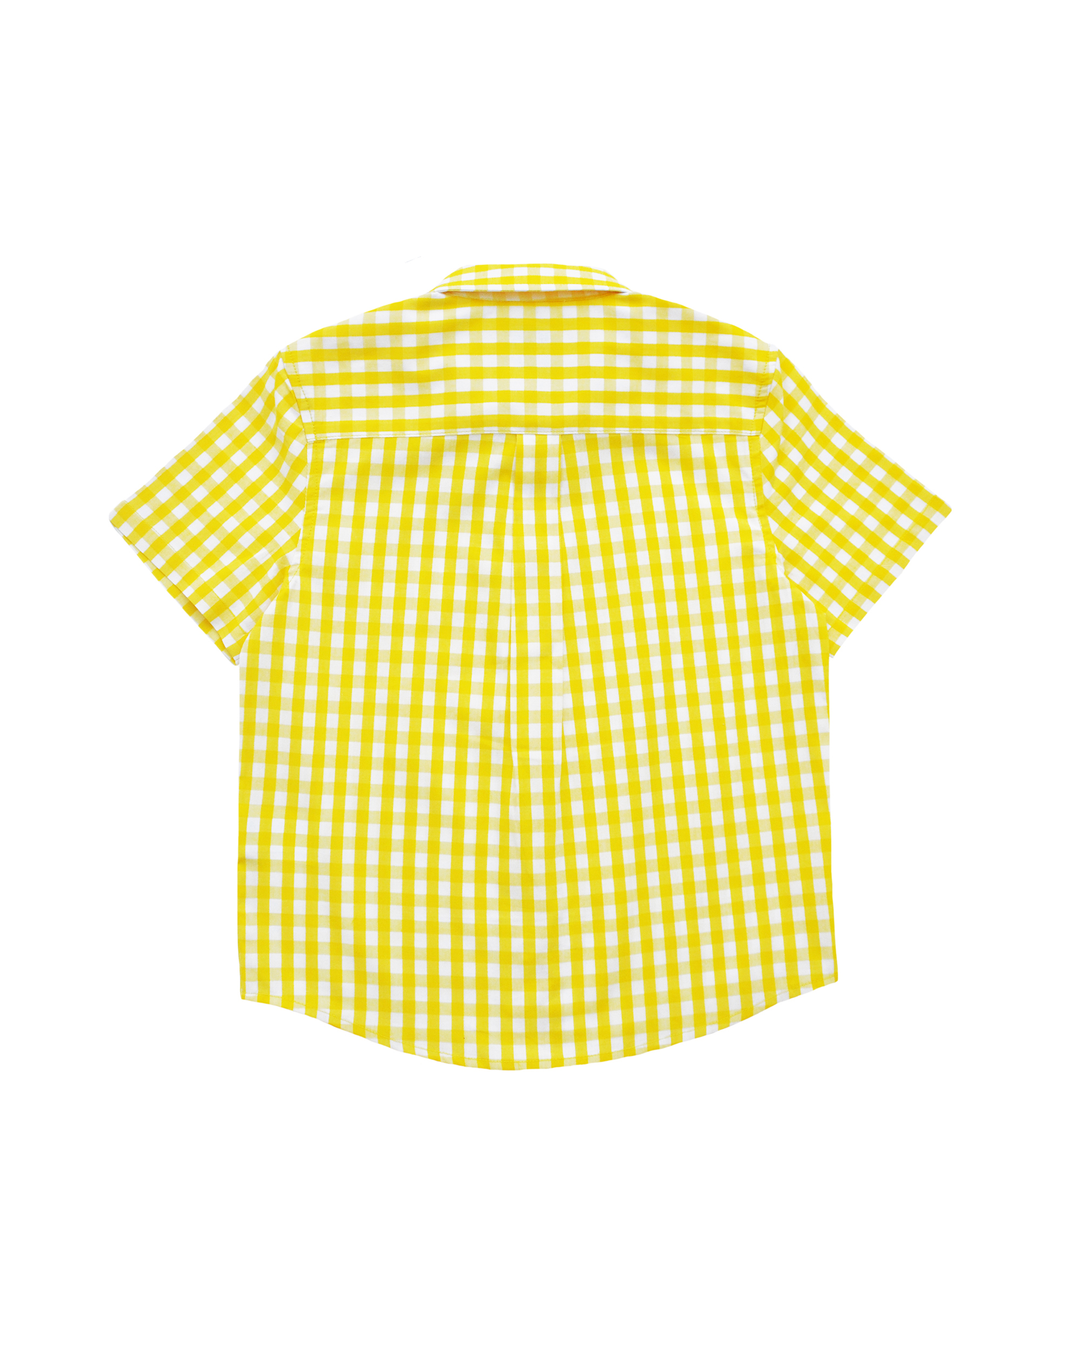 Camisa manga corta de vichy amarillo y blanco